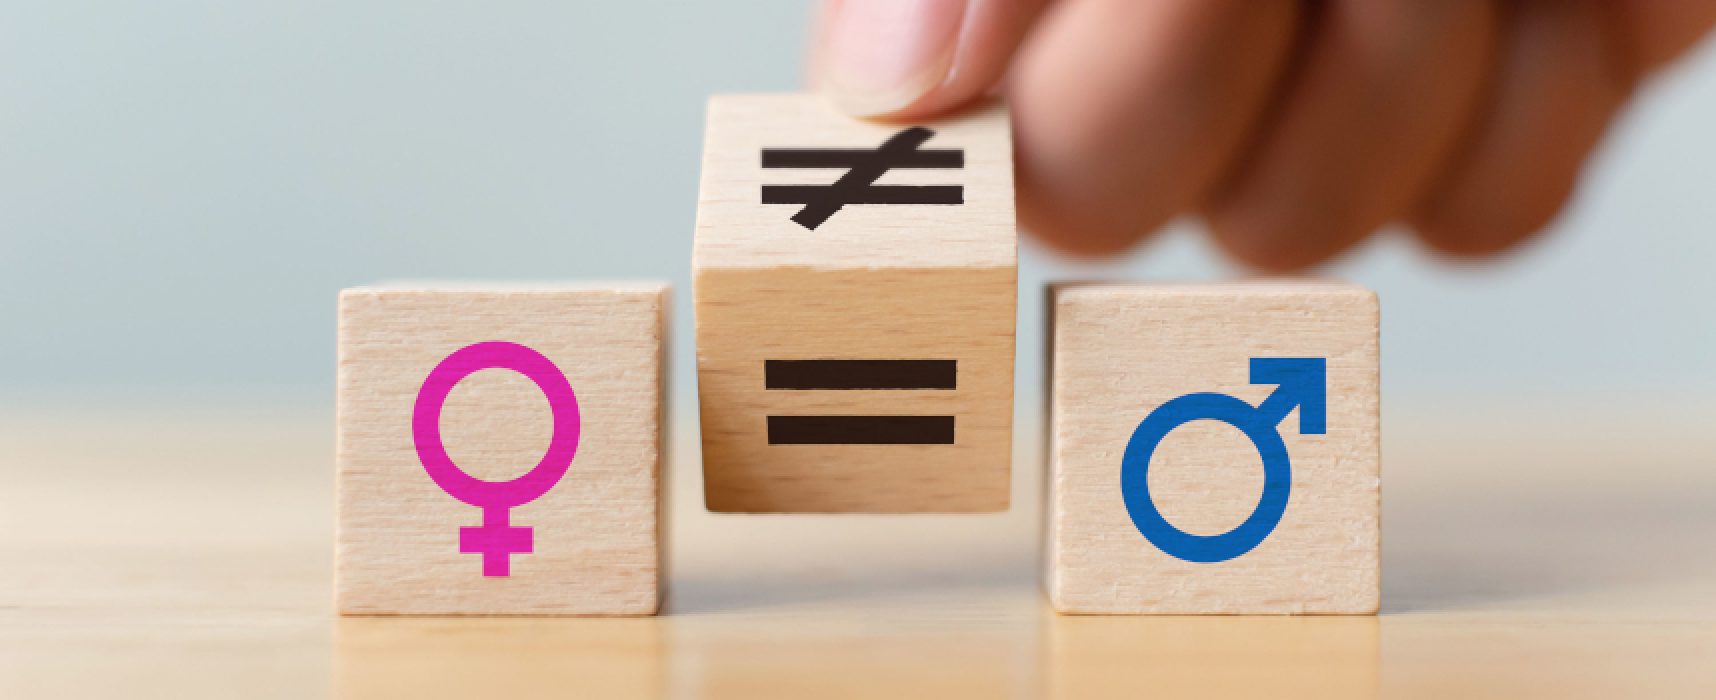 Quarto circolo “don Uva” e Fidapa insieme per la parità di genere e le pari opportunità